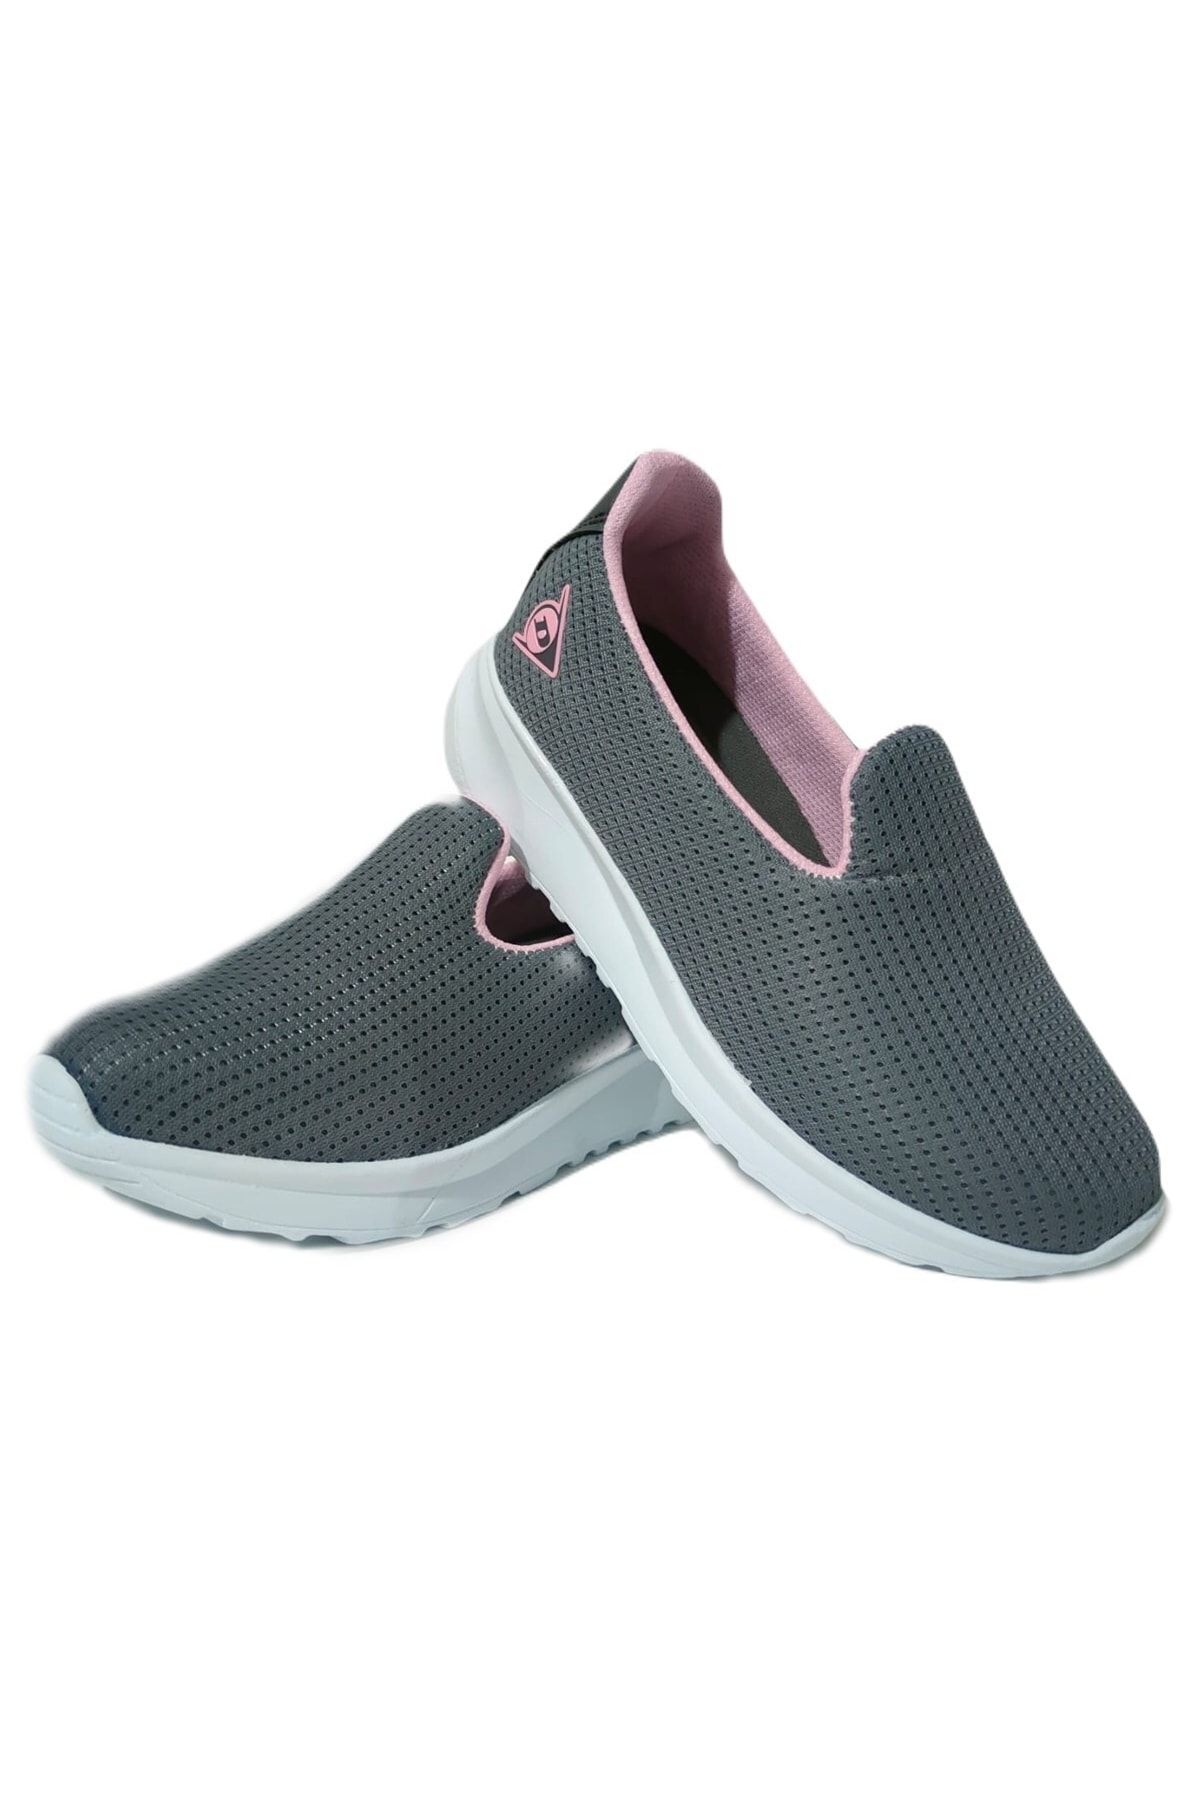 Dunlop Füme Pudra Kadın Günlük Babet Spor Ayakkabı Dnp1719